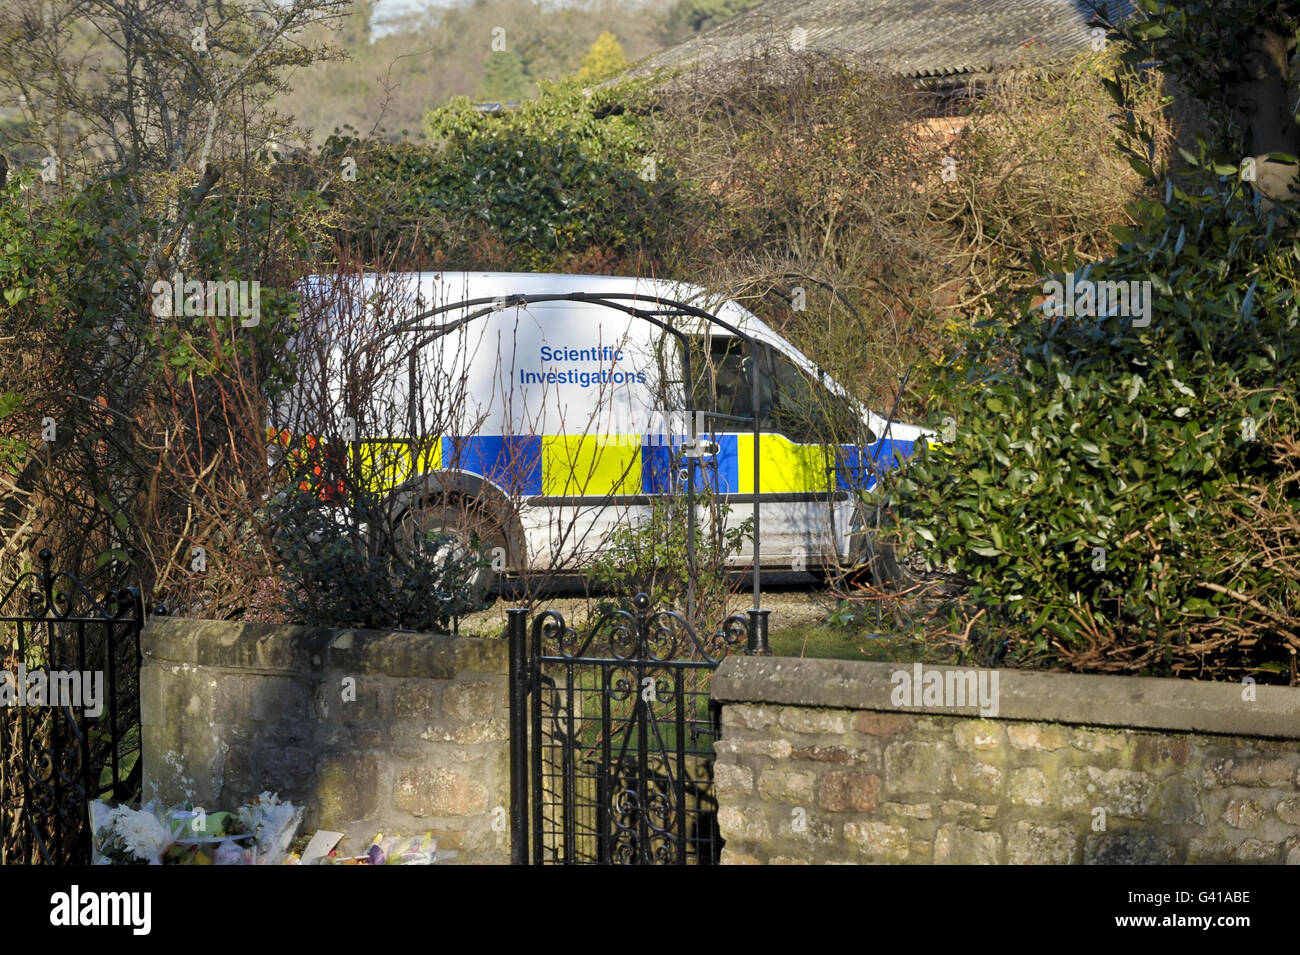 Un veicolo di indagini scientifiche della polizia arriva fuori dall'appartamento dove Joanna Yeates viveva su Canynge Road, che è stato chiuso, a Bristol, dopo che un uomo di 32 anni è stato arrestato oggi per sospetto del suo assassinio. Foto Stock